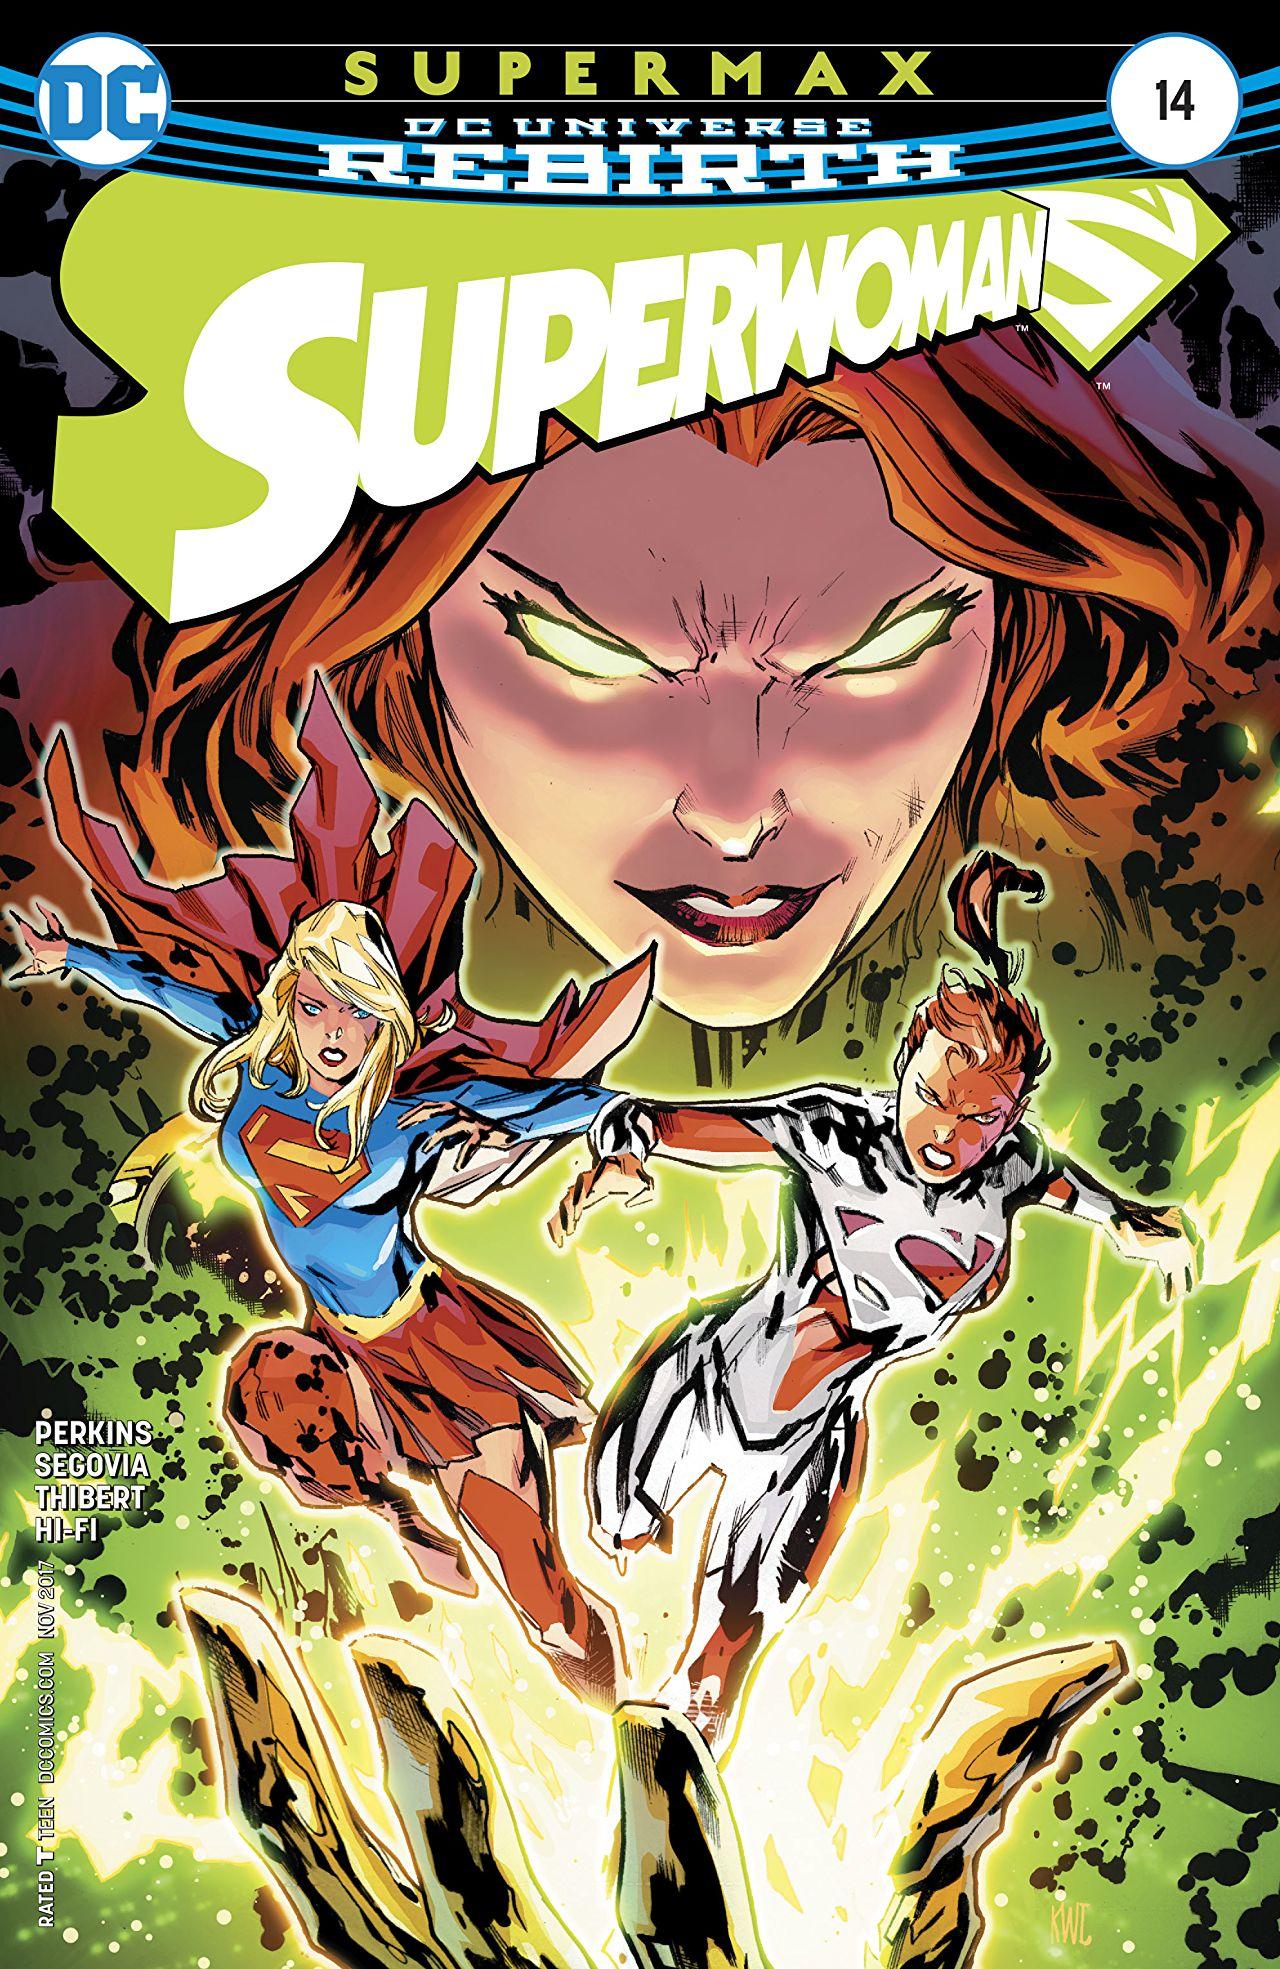 Superwoman Vol. 1 #14